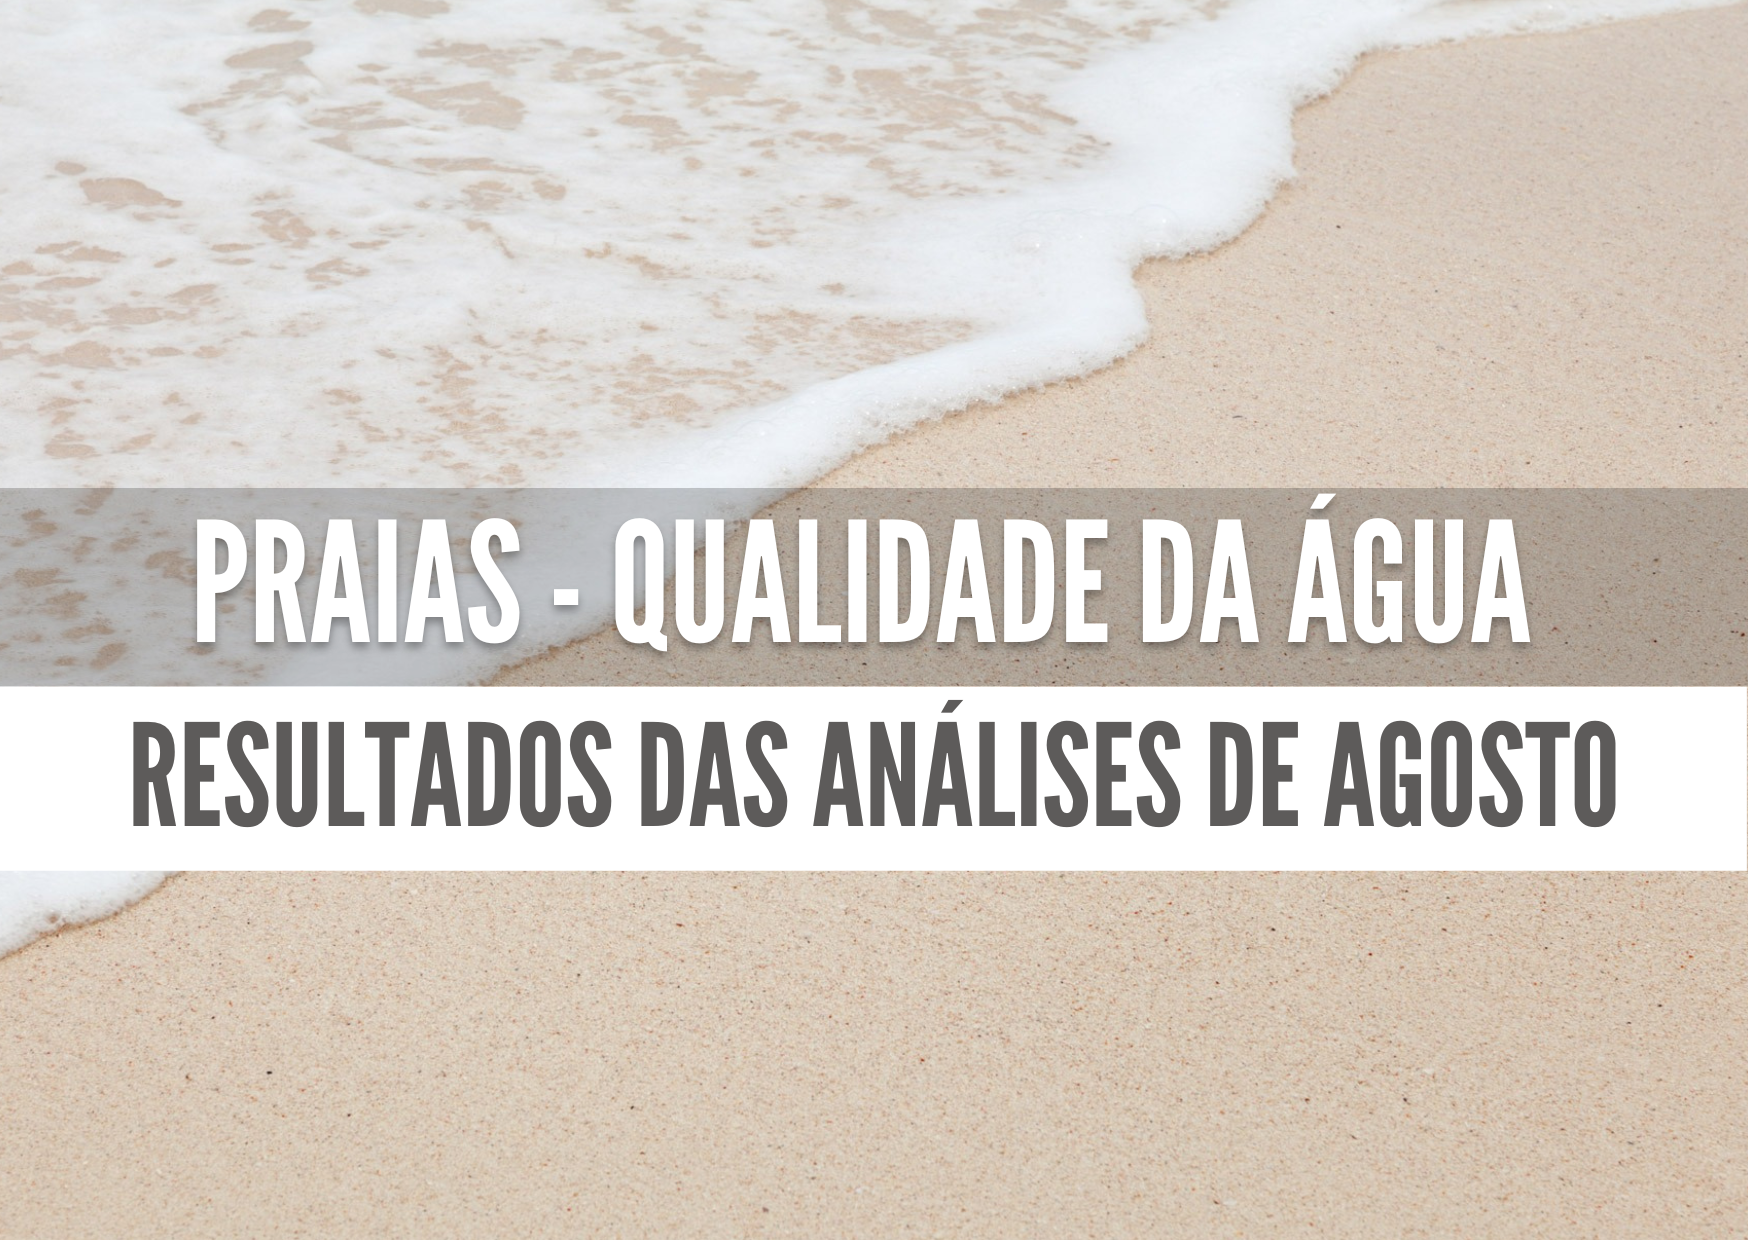 Qualidade das águas das praias - resultados das análises de agosto